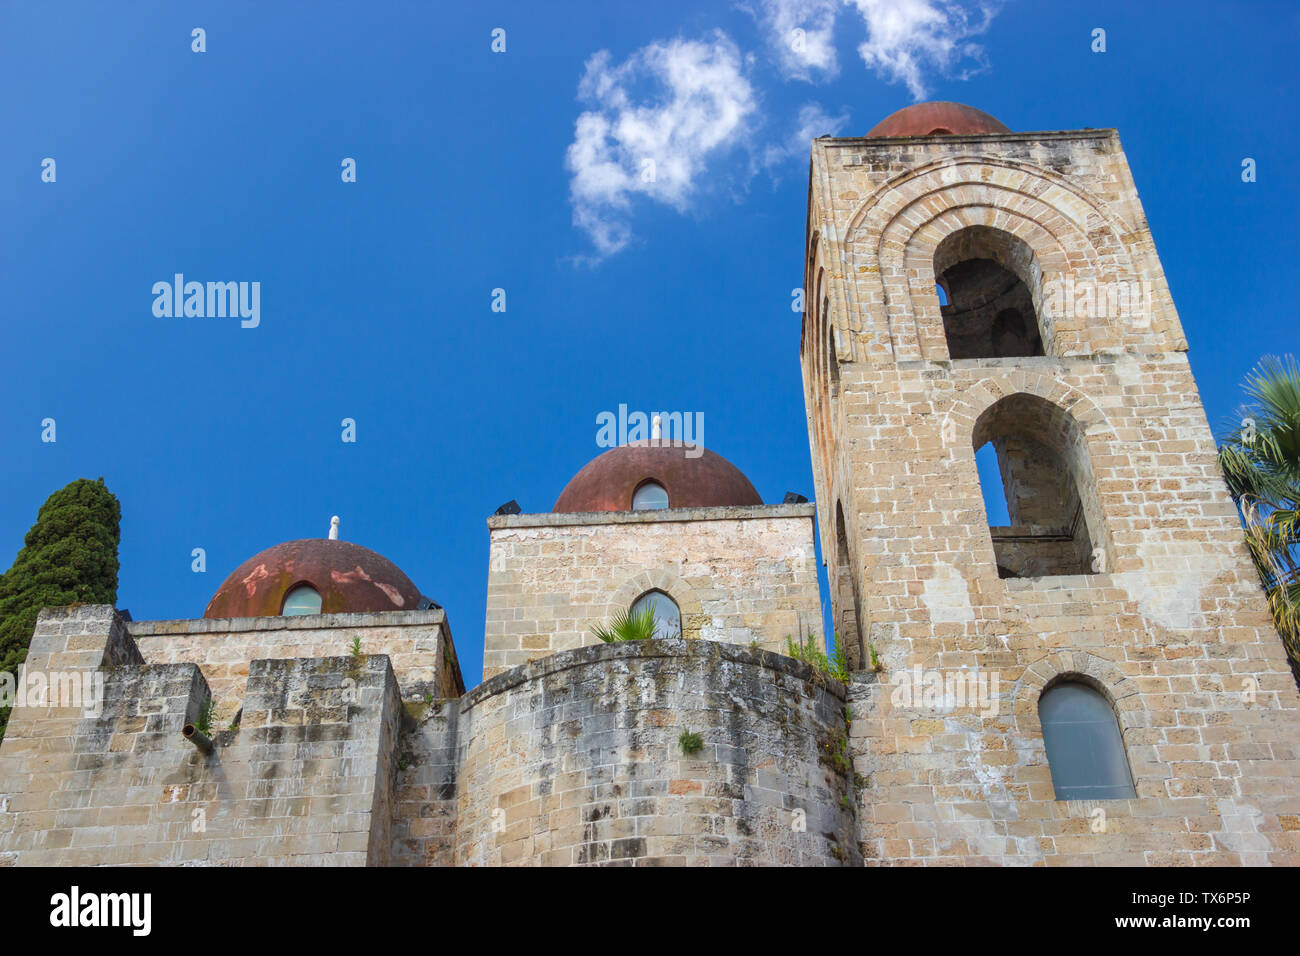 Turismo storico la chiesa di San Giovanni degli Eremiti a Palermo e in Sicilia, chiudere la vista dell'arabo facciata e campanile con cupole rosse Foto Stock